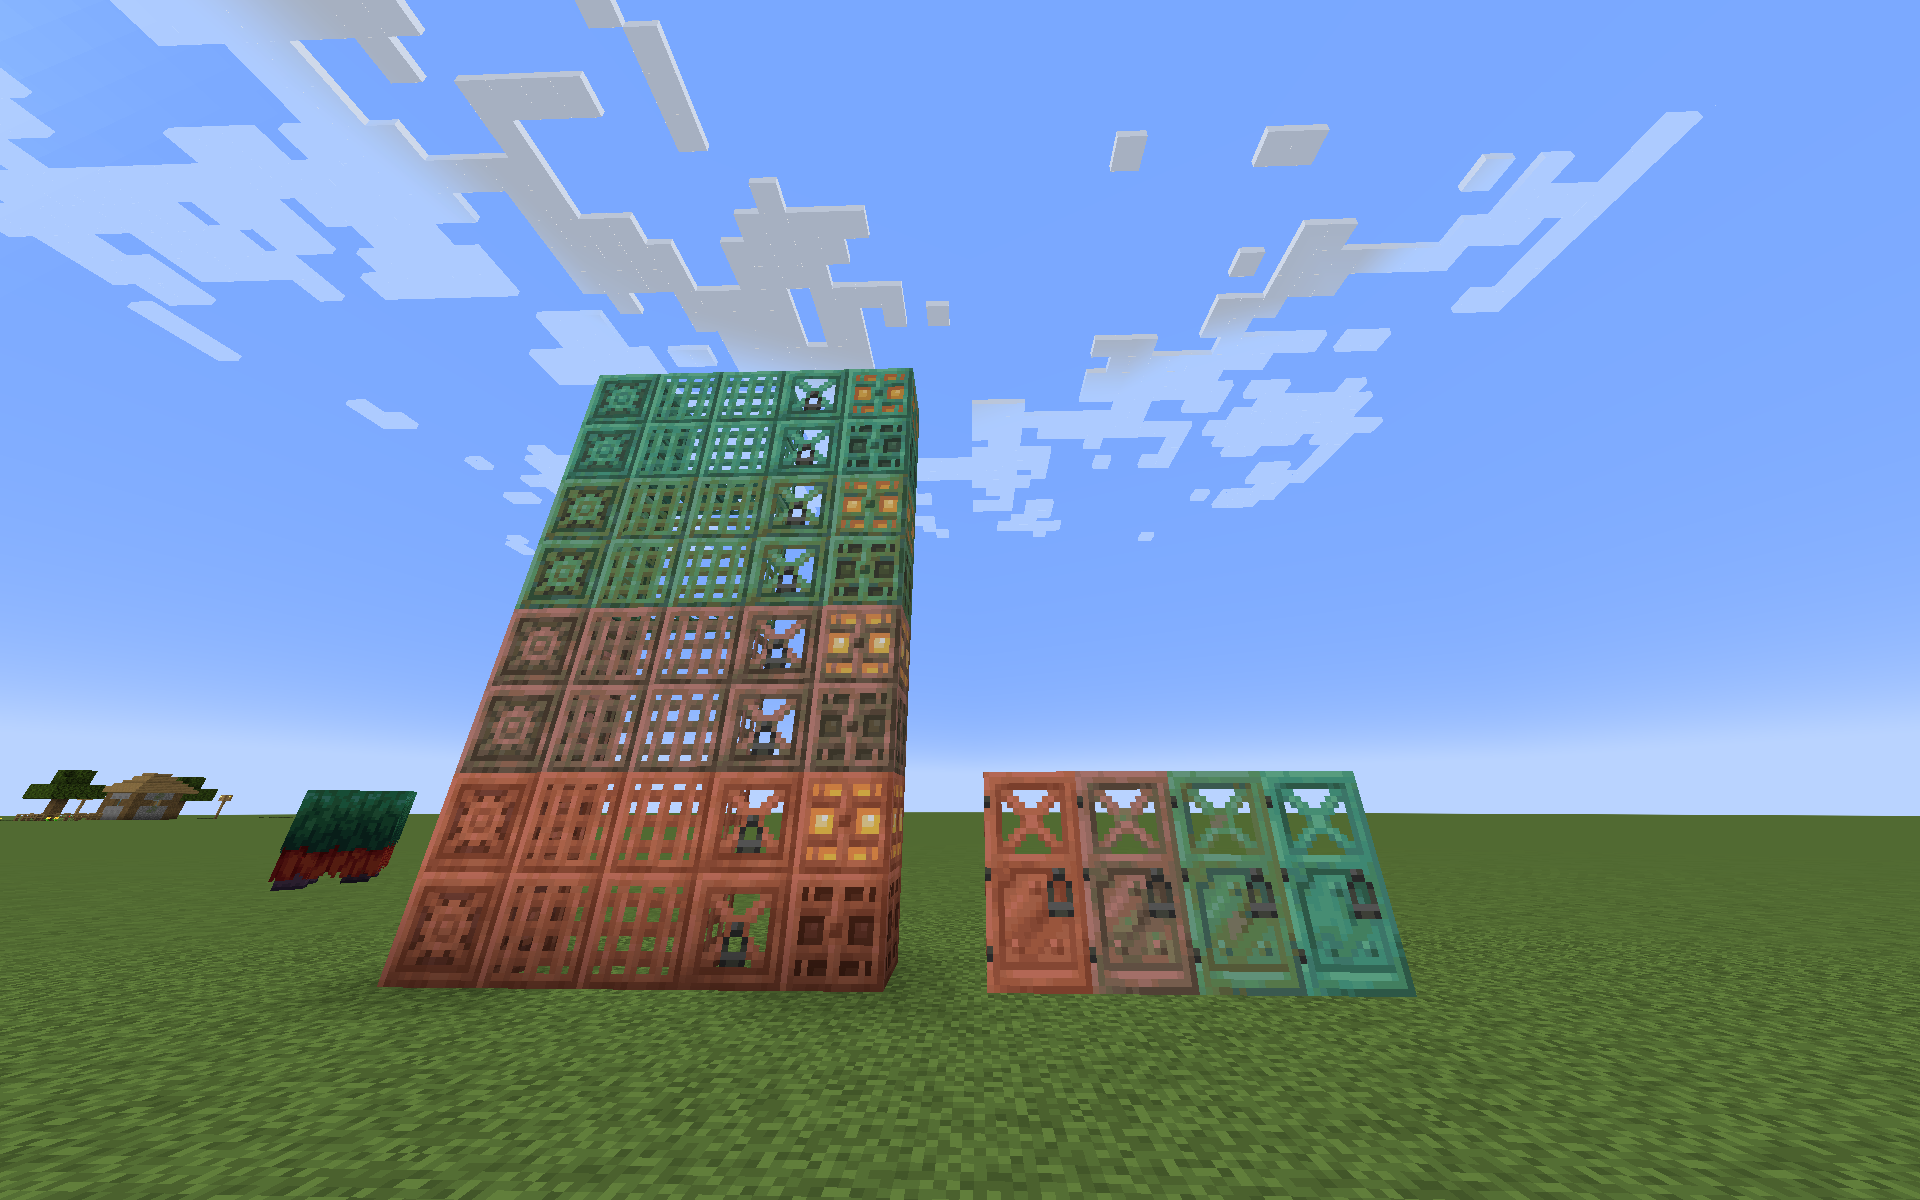 Copper blocks